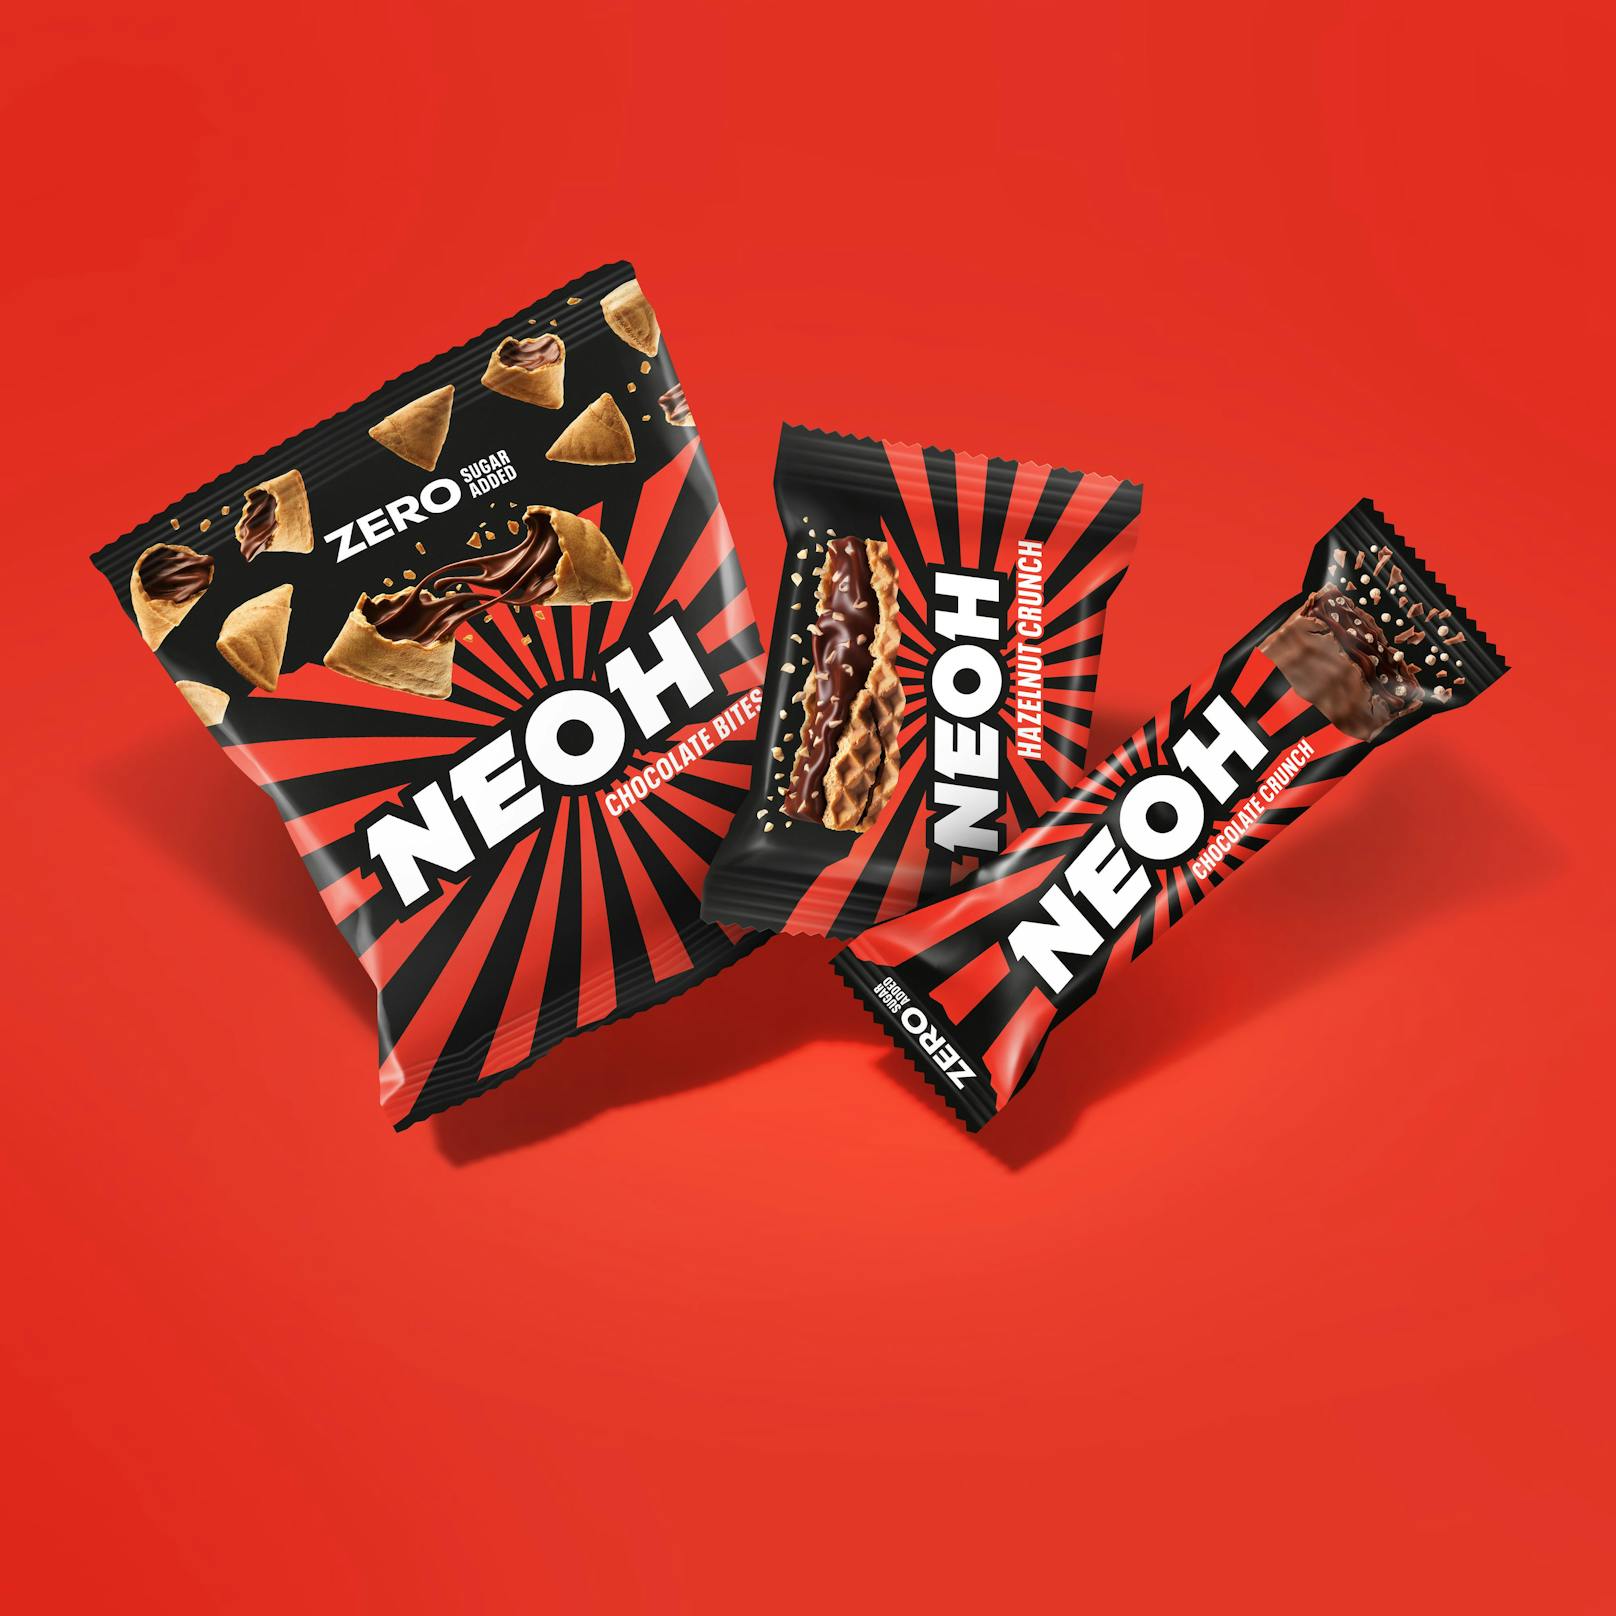 Das neue Naschen: NEOH Chocolate Bites, Hazelnut Crunch und Chocolate Crunch Bar